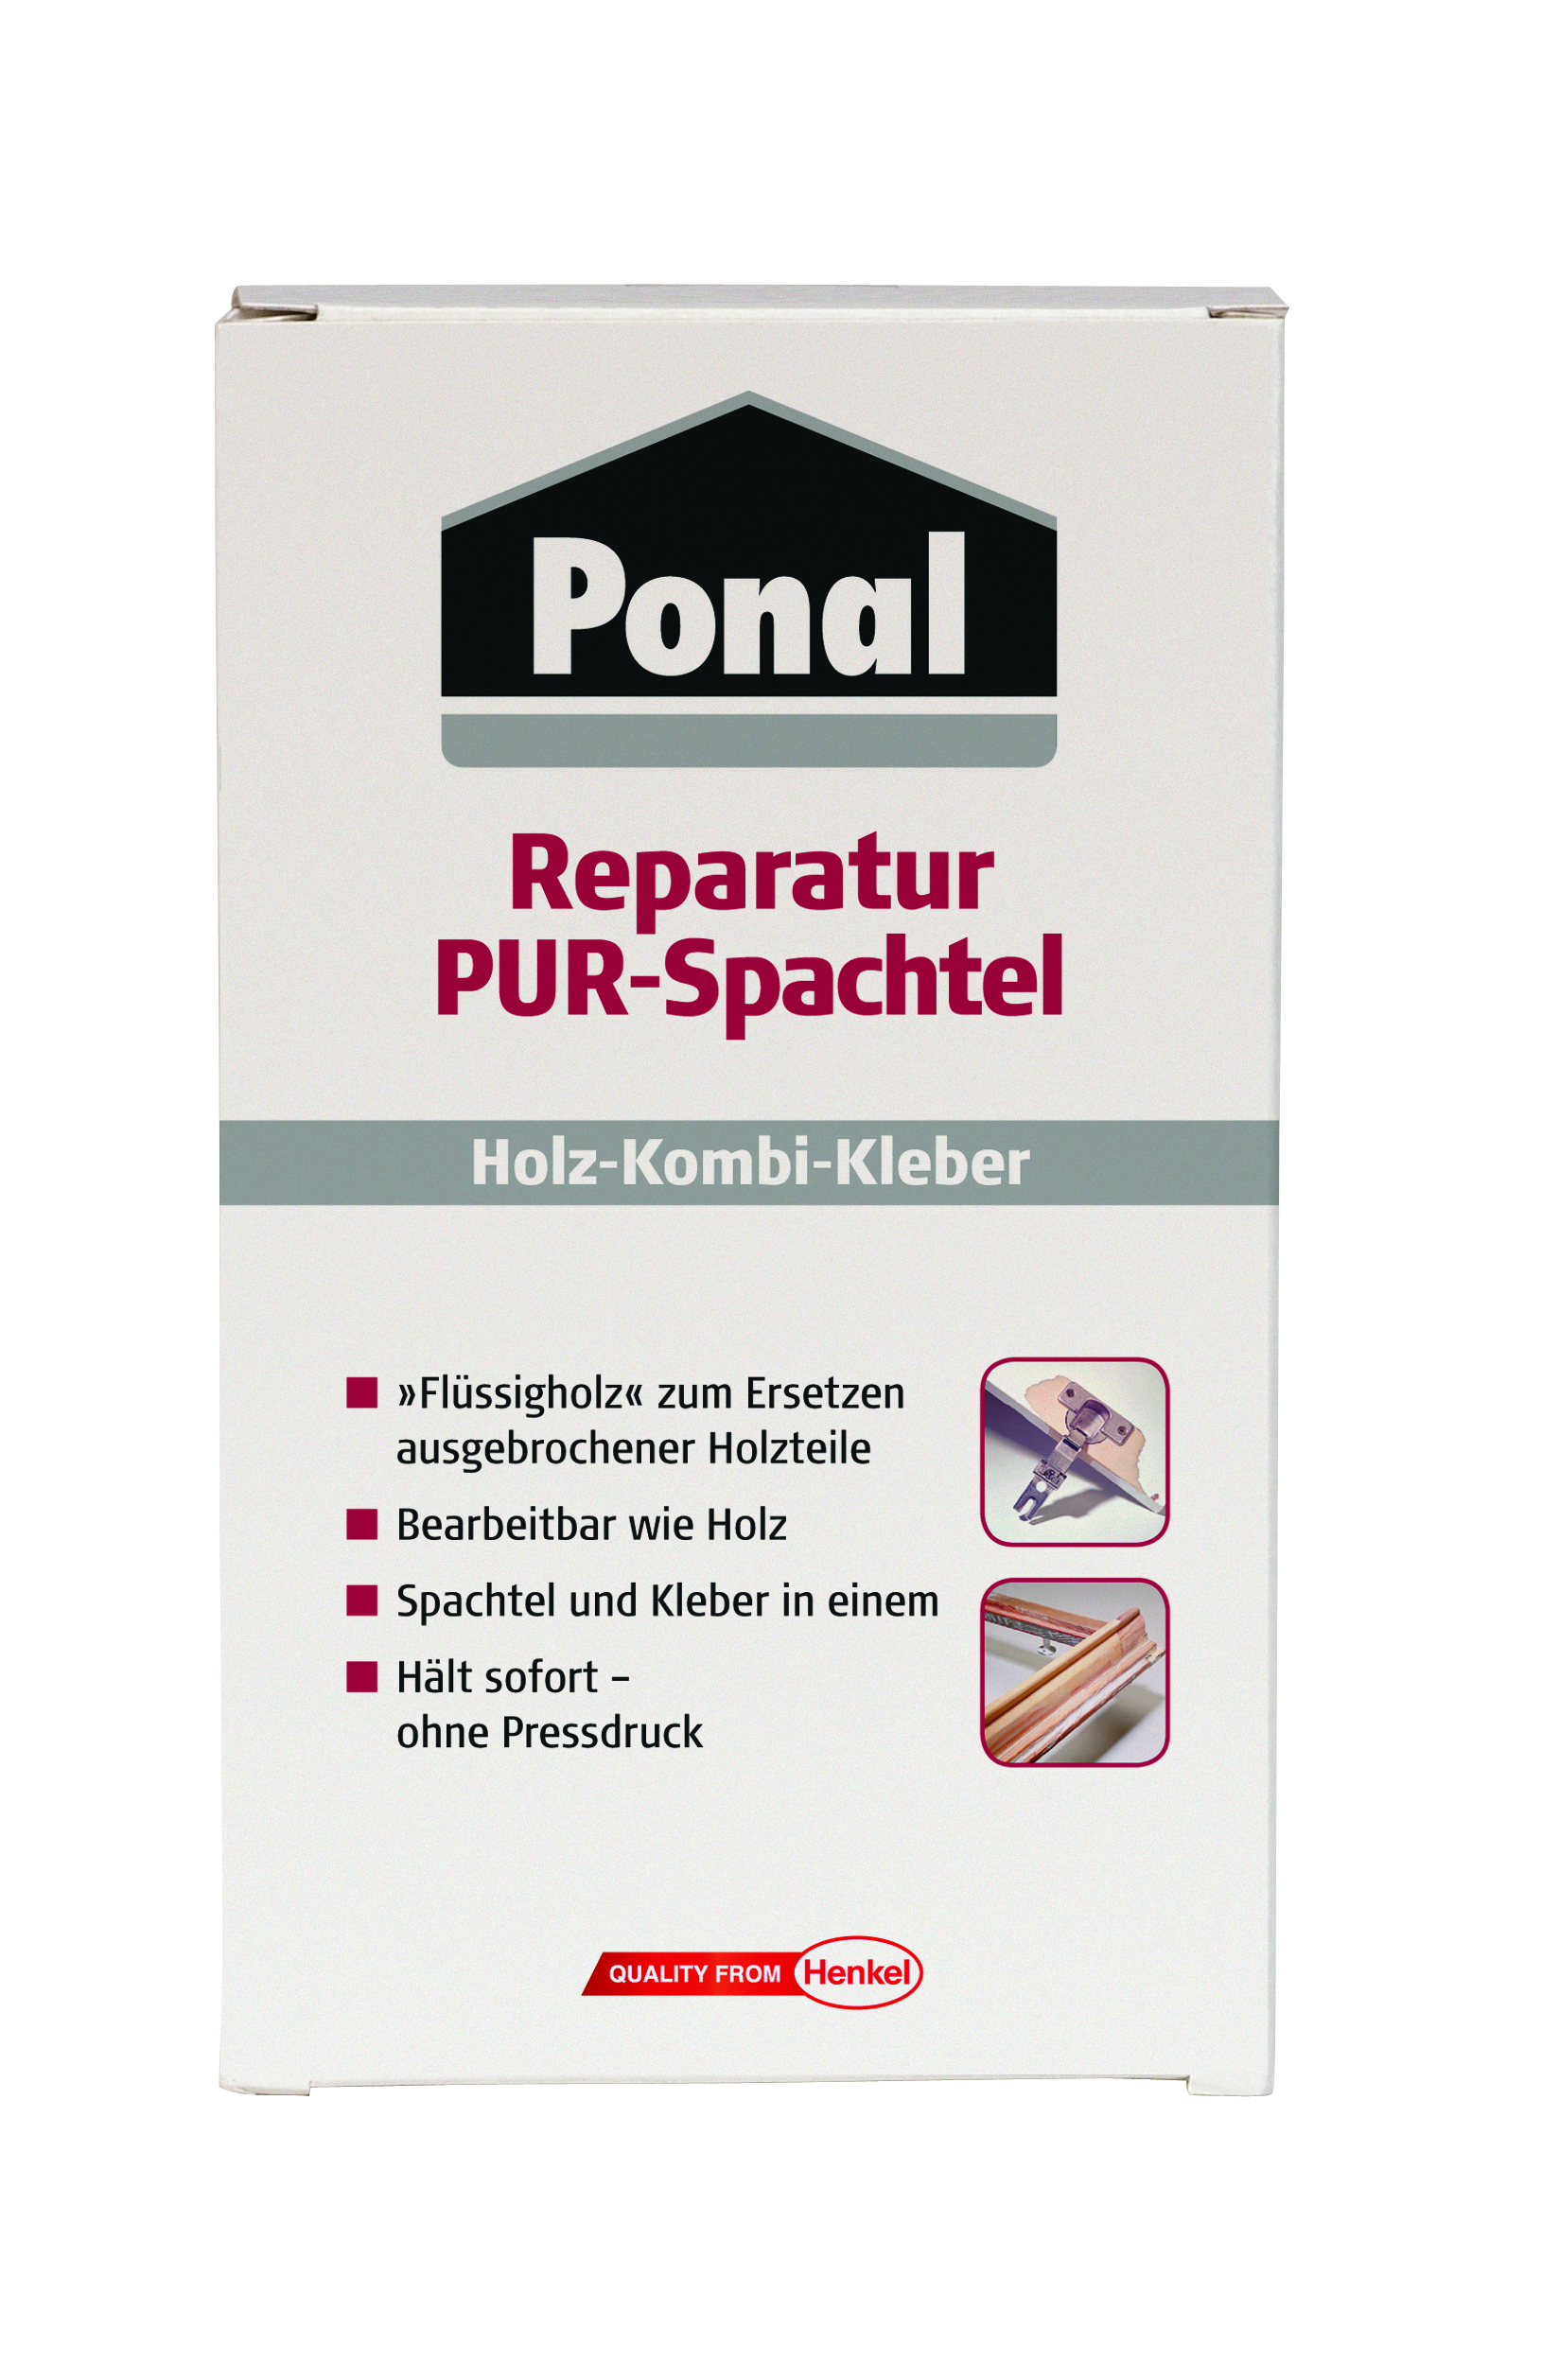 Ponal Reparatur PUR-Spachtel, 177 g